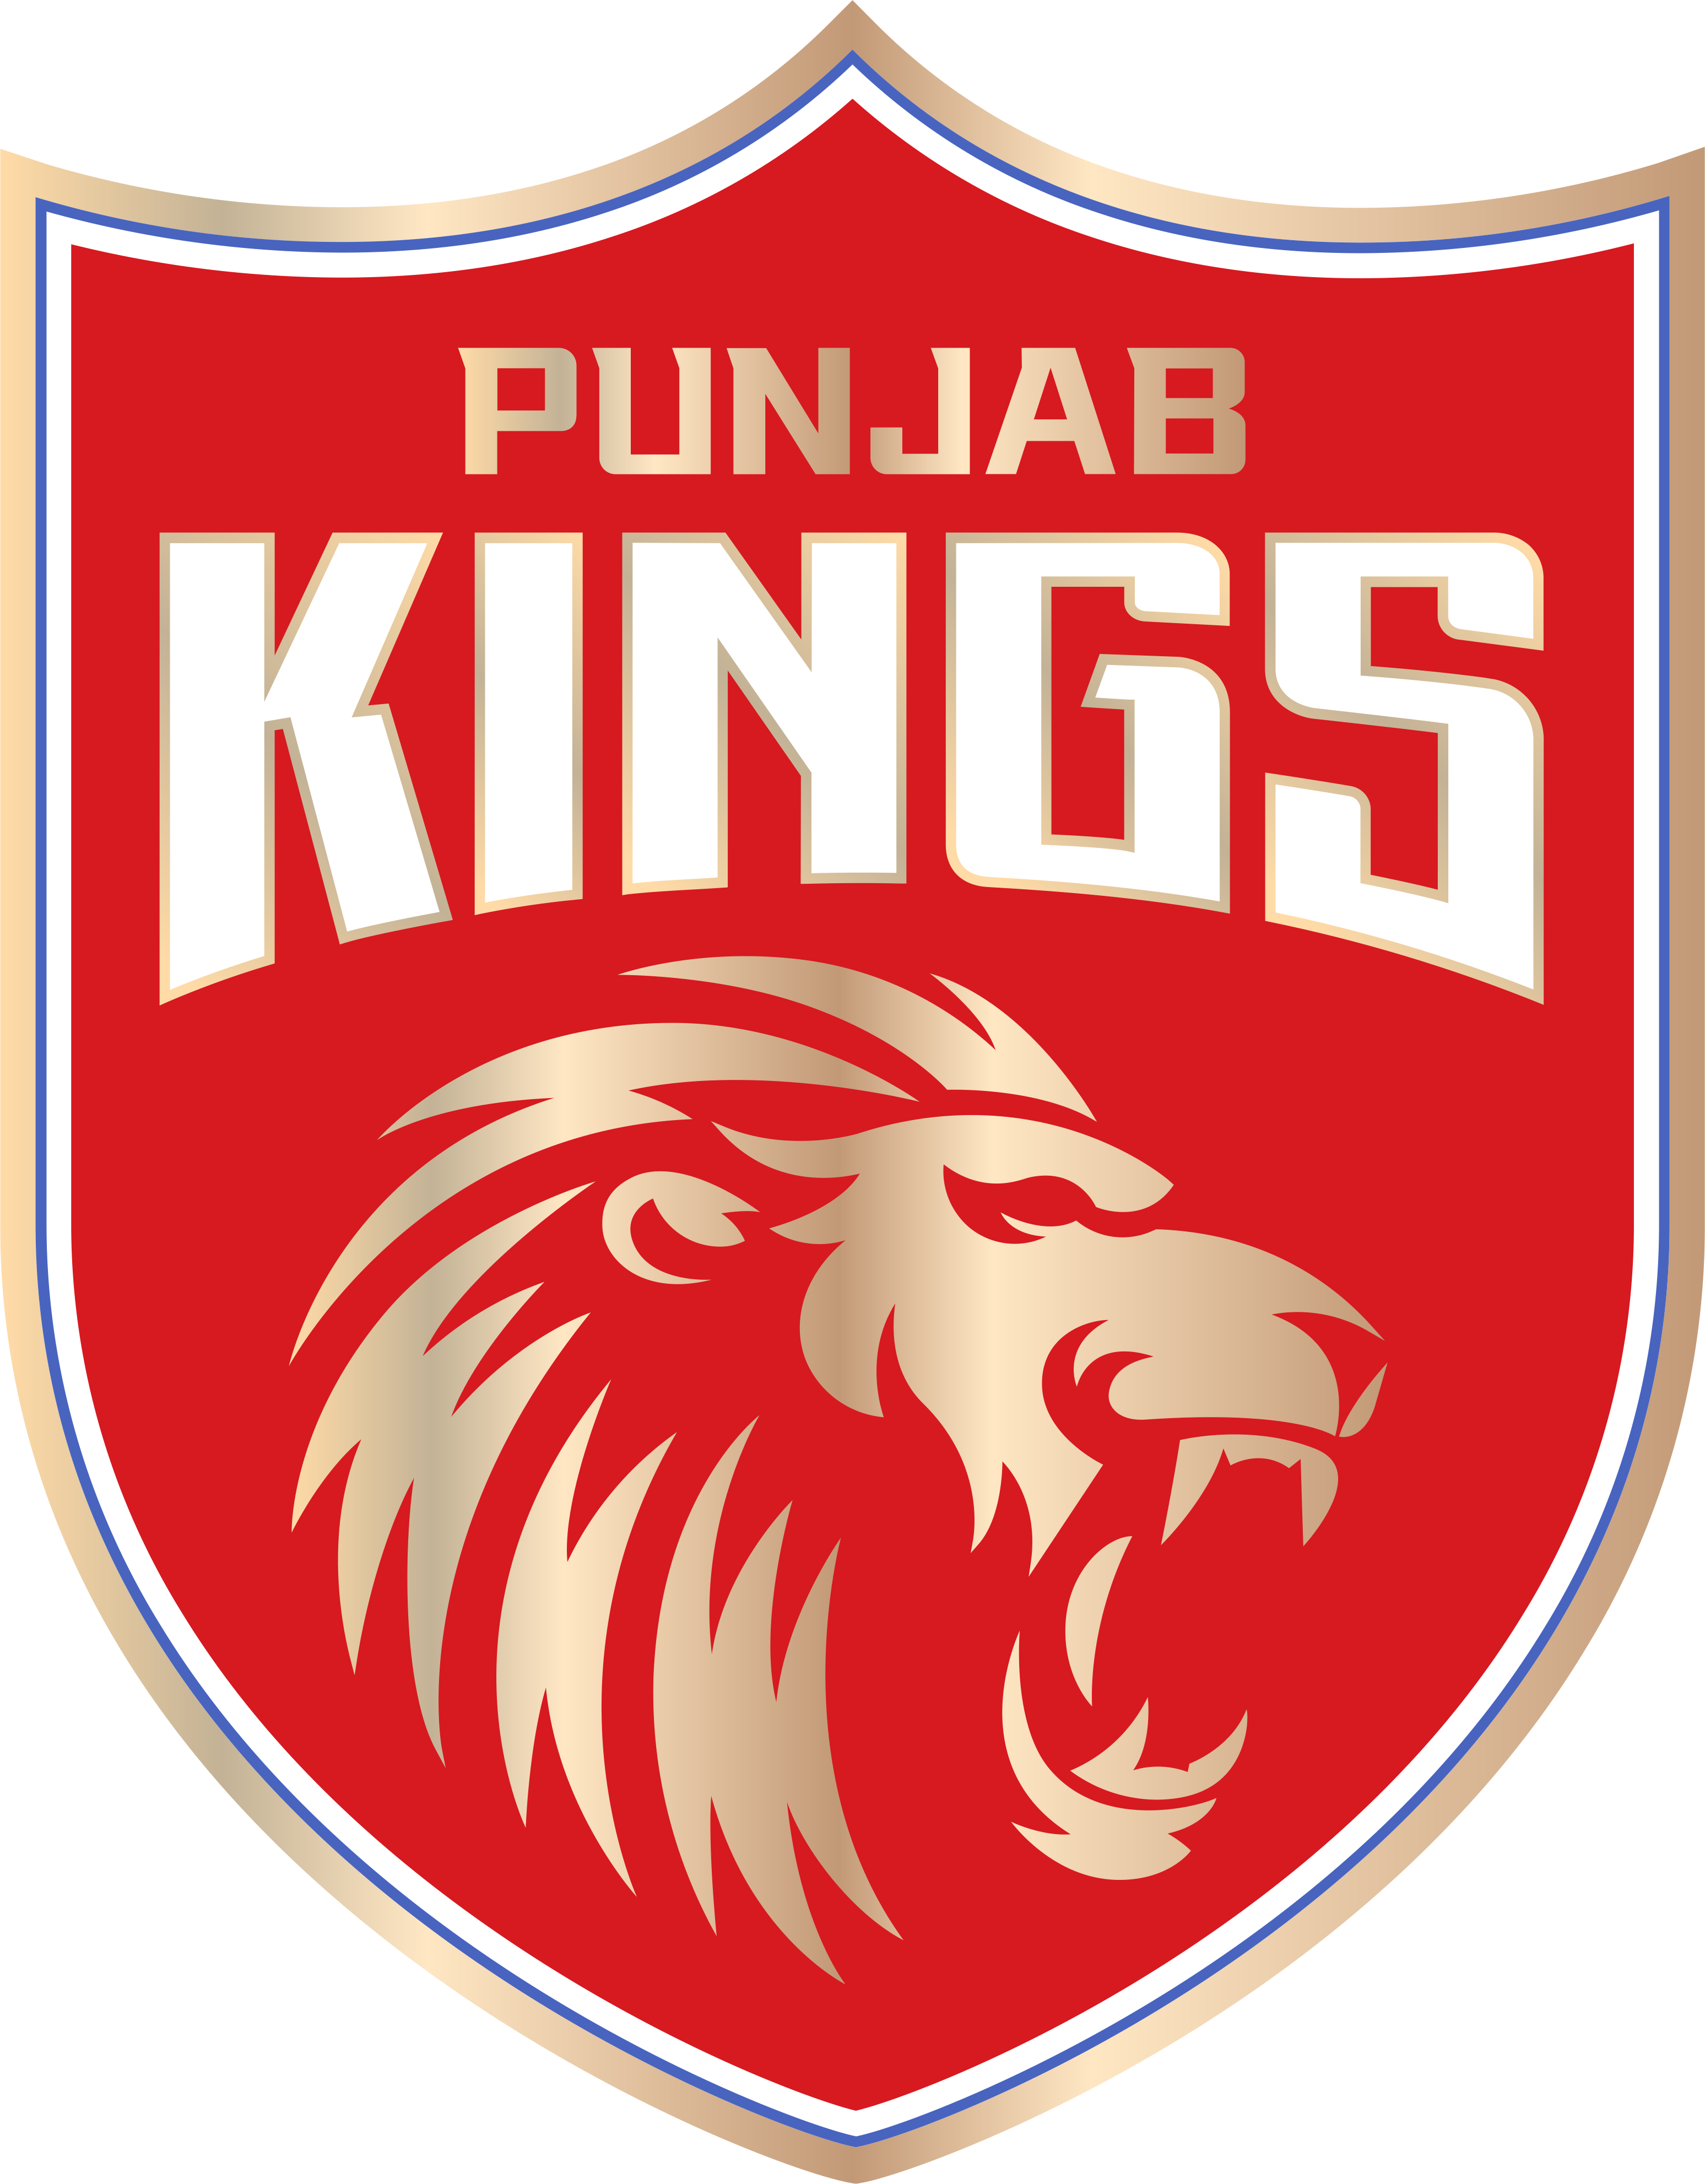 Punjab Kings Logo PNG Image Free Download From pixlok.com